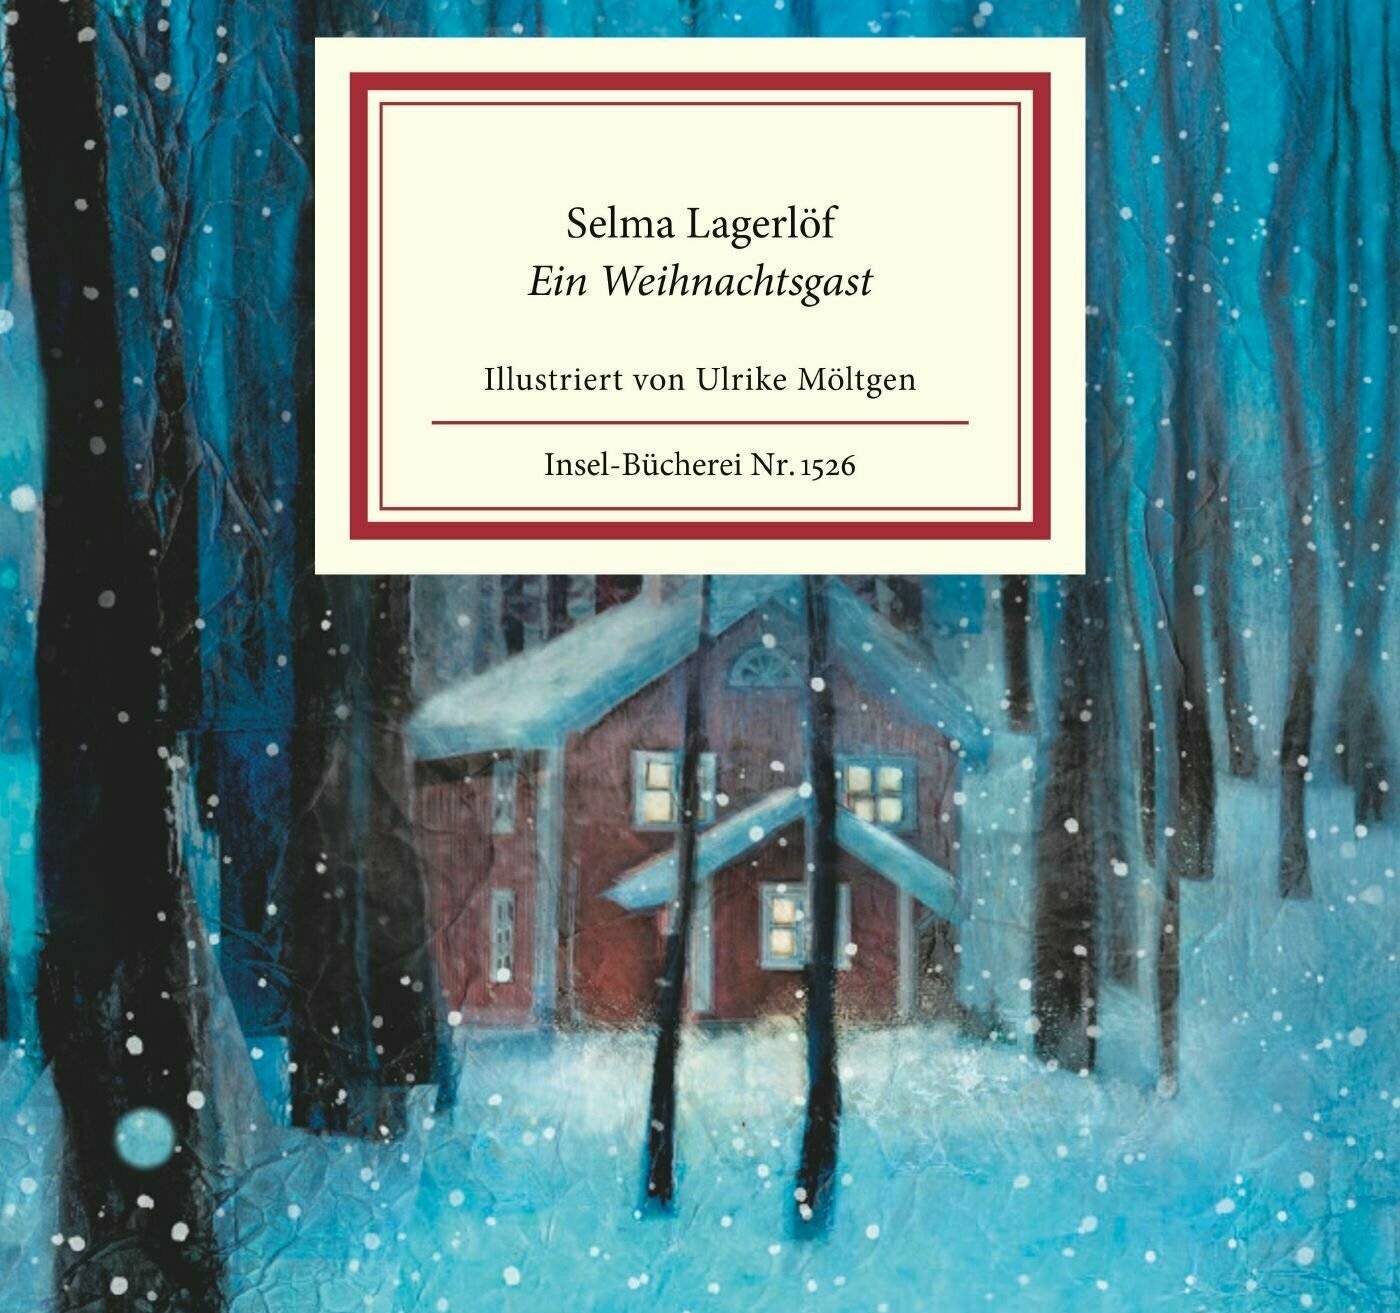  Selma Lagerlöfs „Ein Weihnachtsgast“ – illustriert von Ulrike Möltgen.  